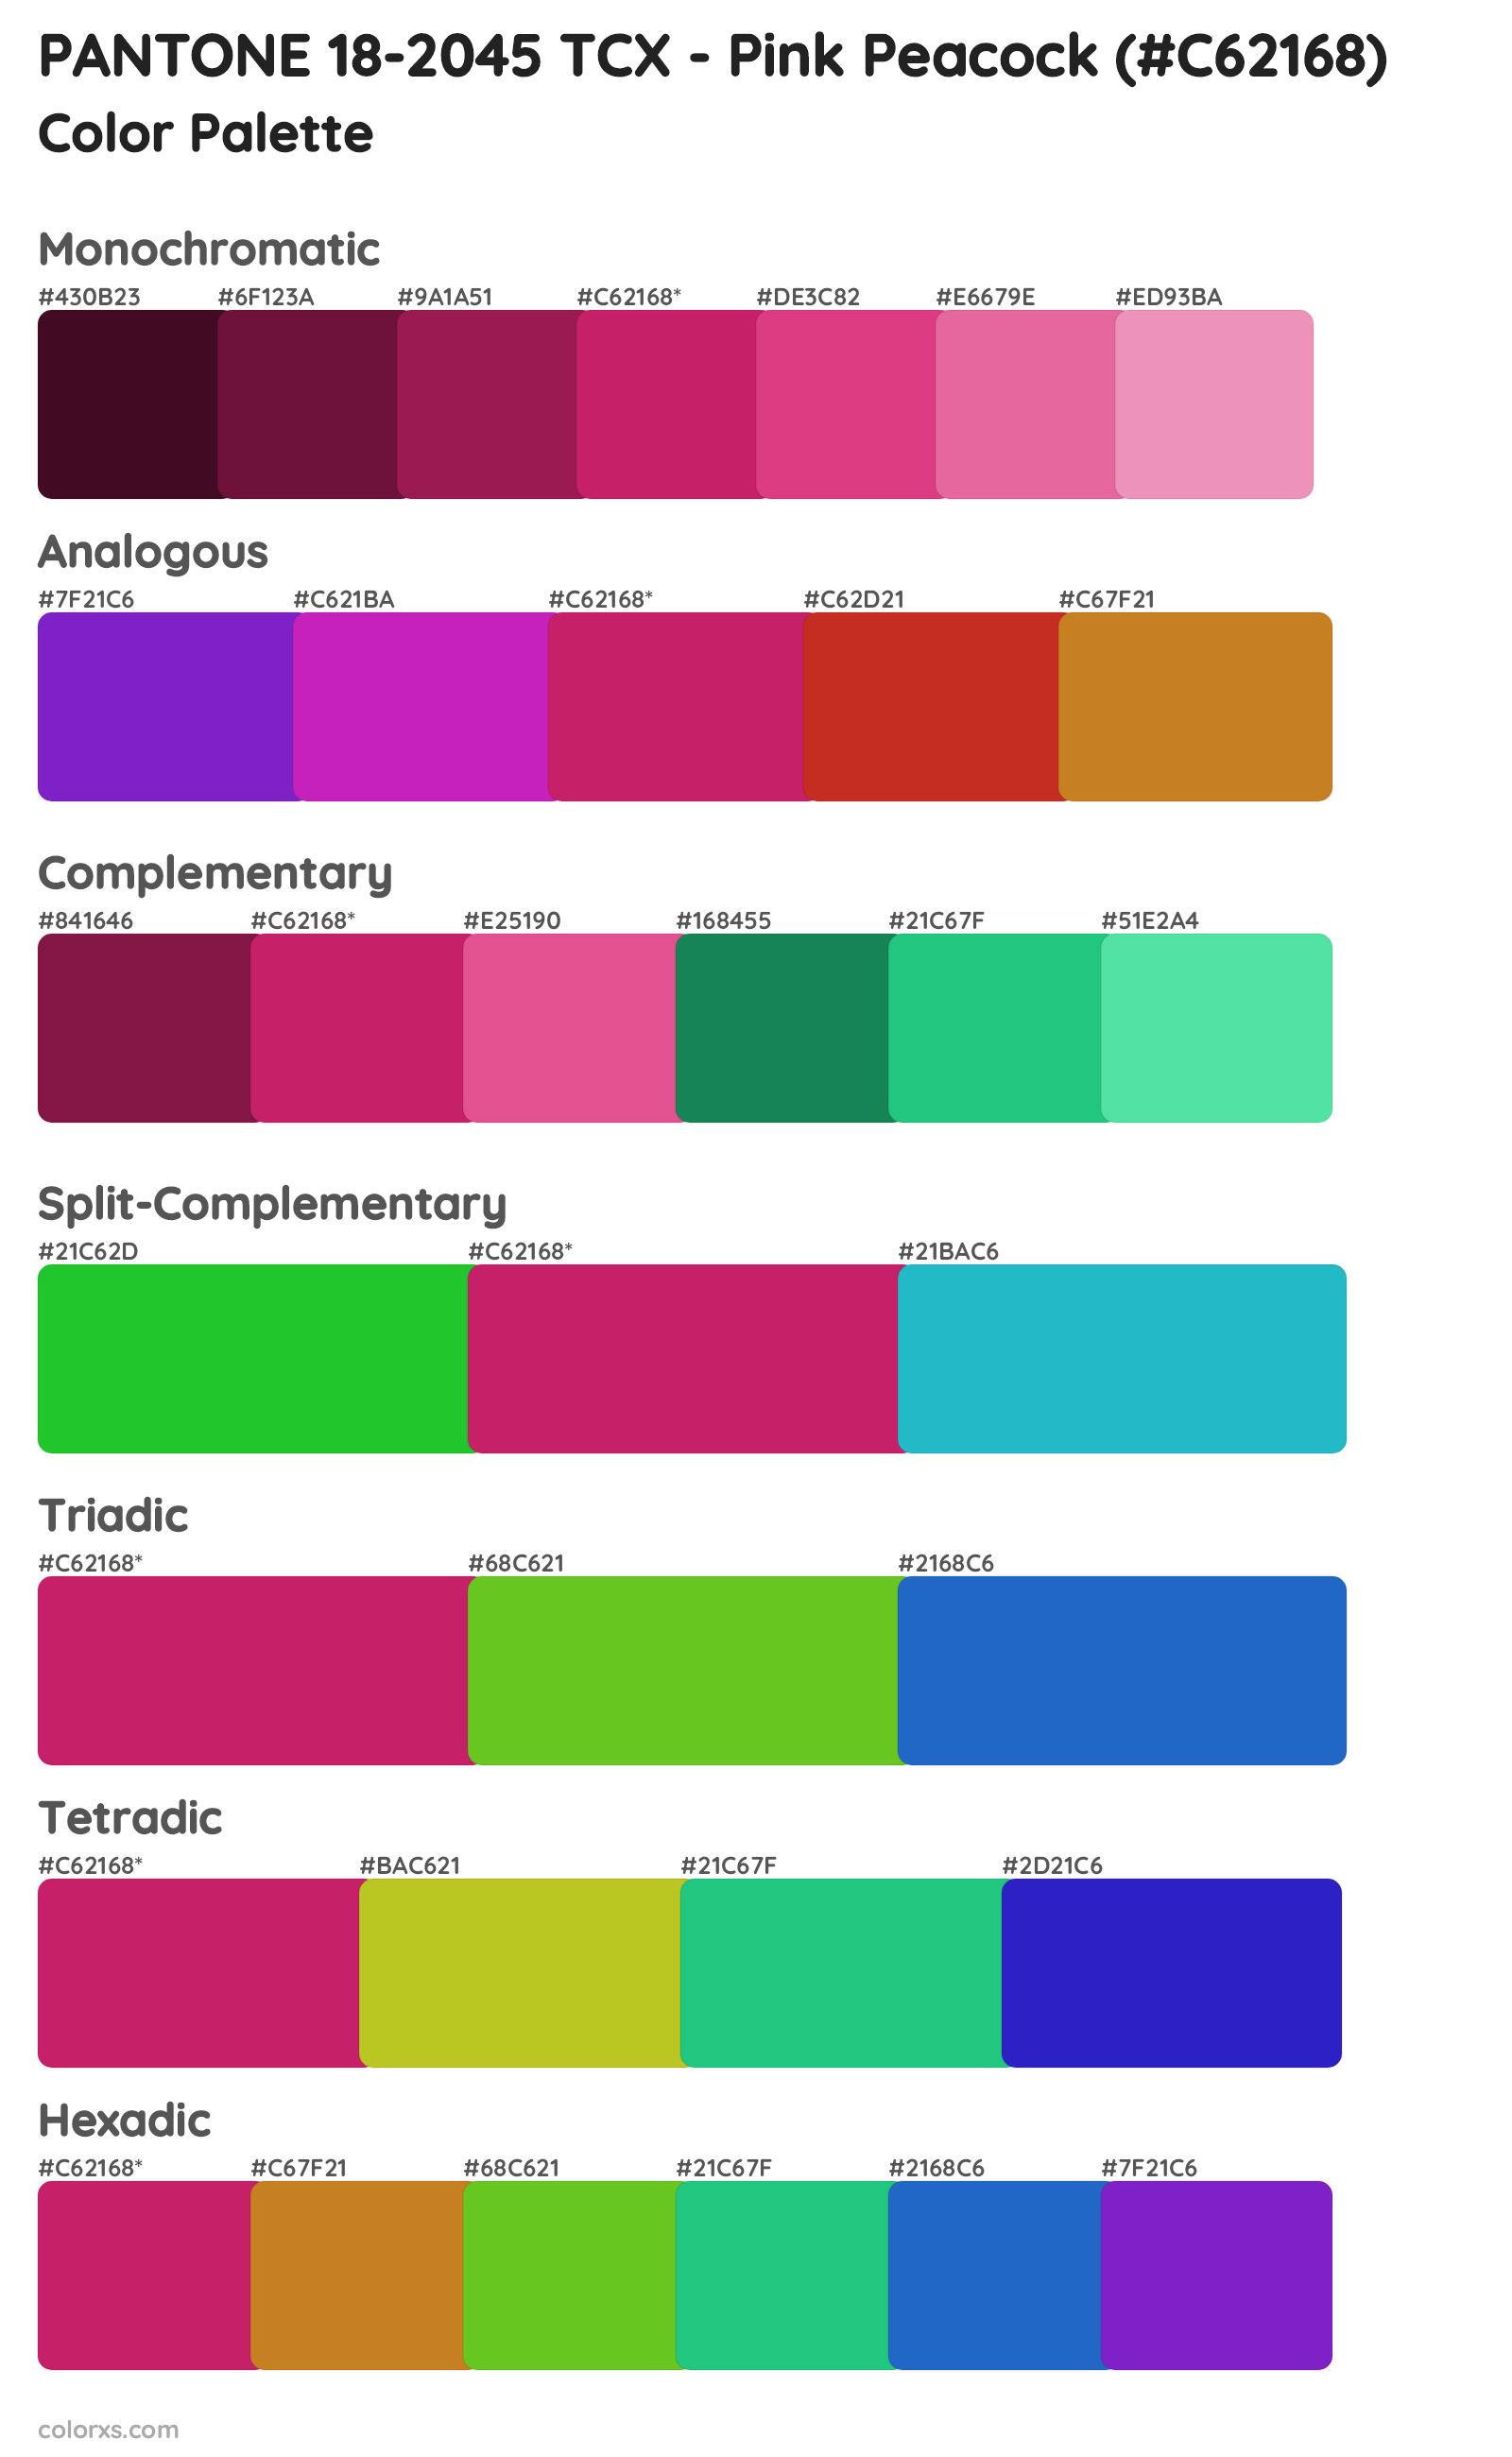 PANTONE 18-2045 TCX - Pink Peacock Color Scheme Palettes